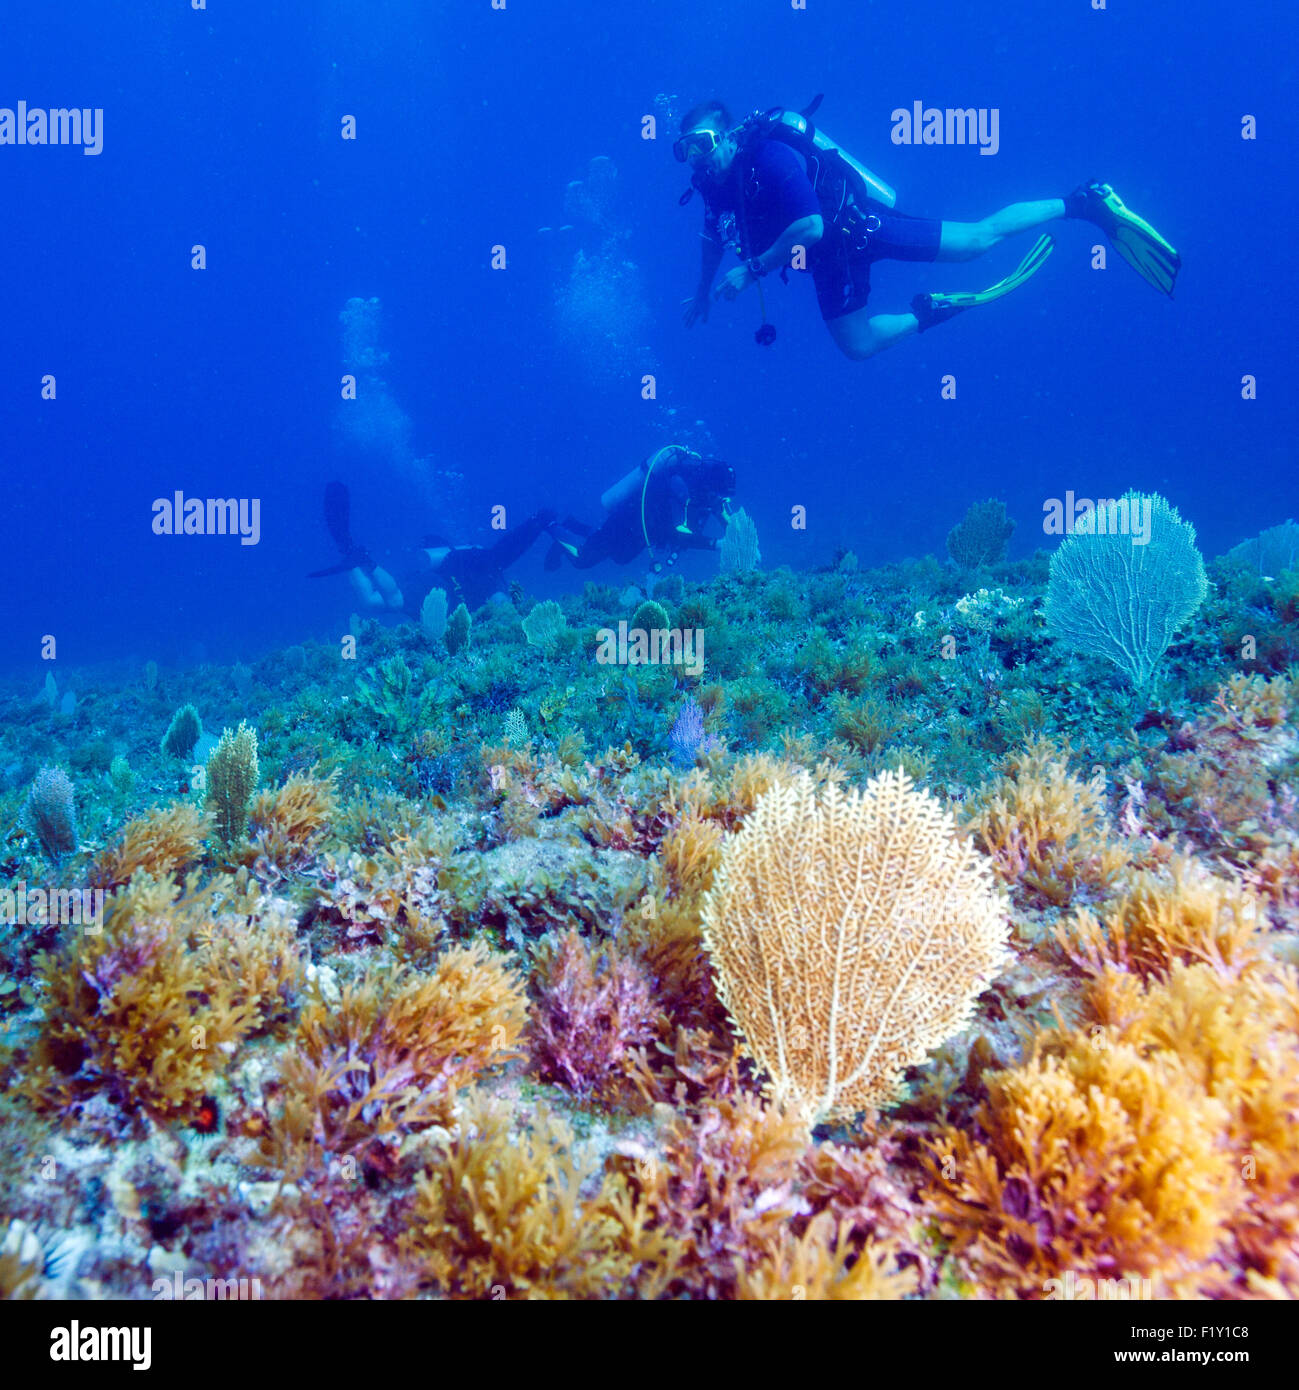 Jeune homme de Plongée sous marine entre la mer et la surface de l'eau bas Banque D'Images